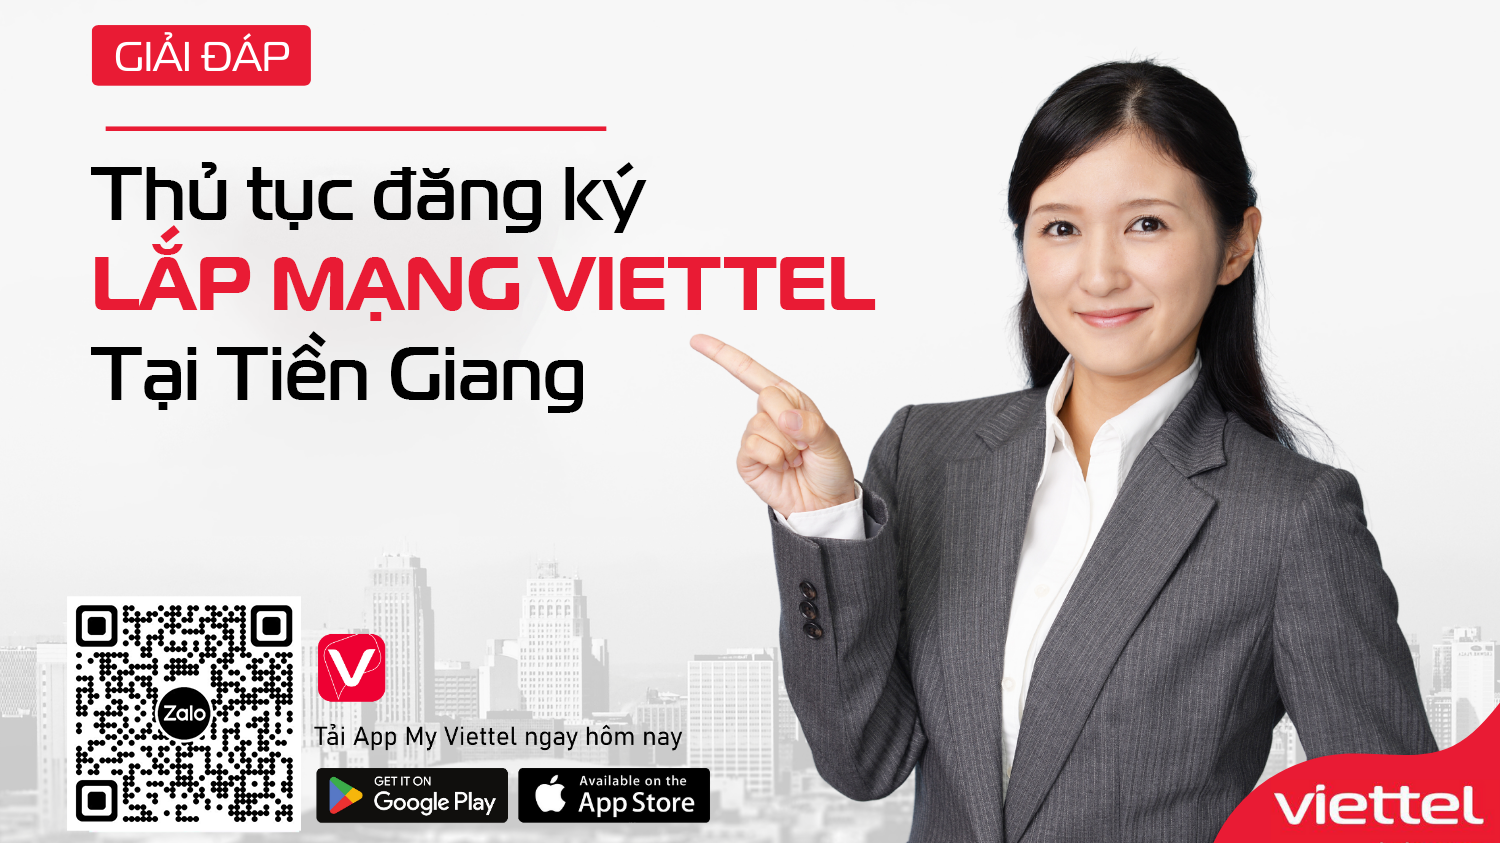 Thủ tục lắp mạng Viettel tại Tiền Giang